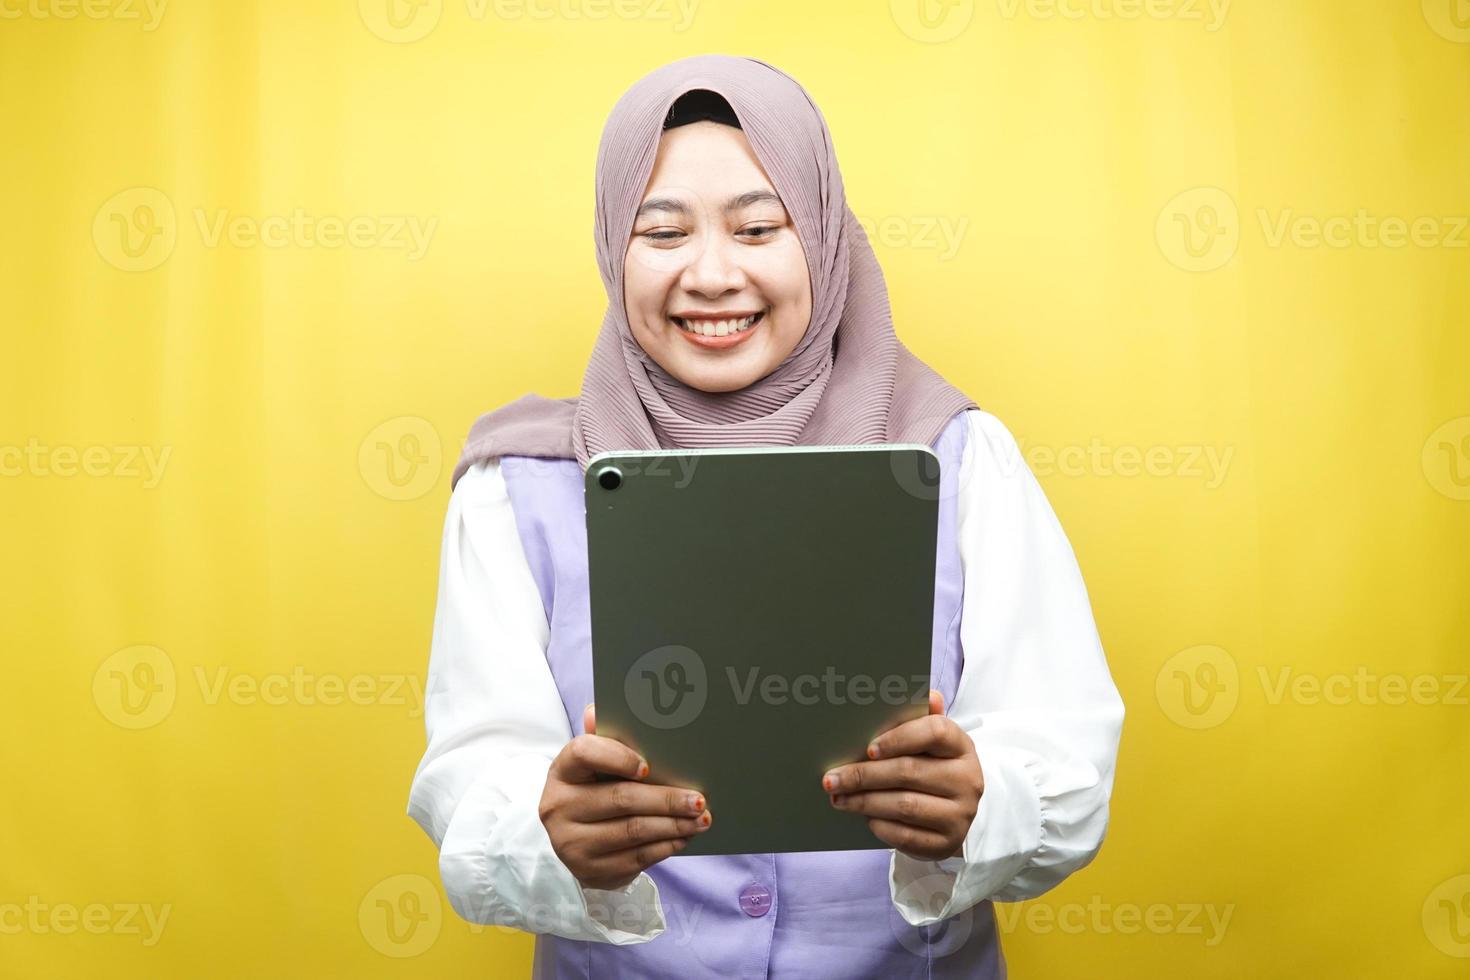 bela jovem asiática muçulmana sorrindo, animada e alegre segurando o tablet, isolado em um fundo amarelo foto